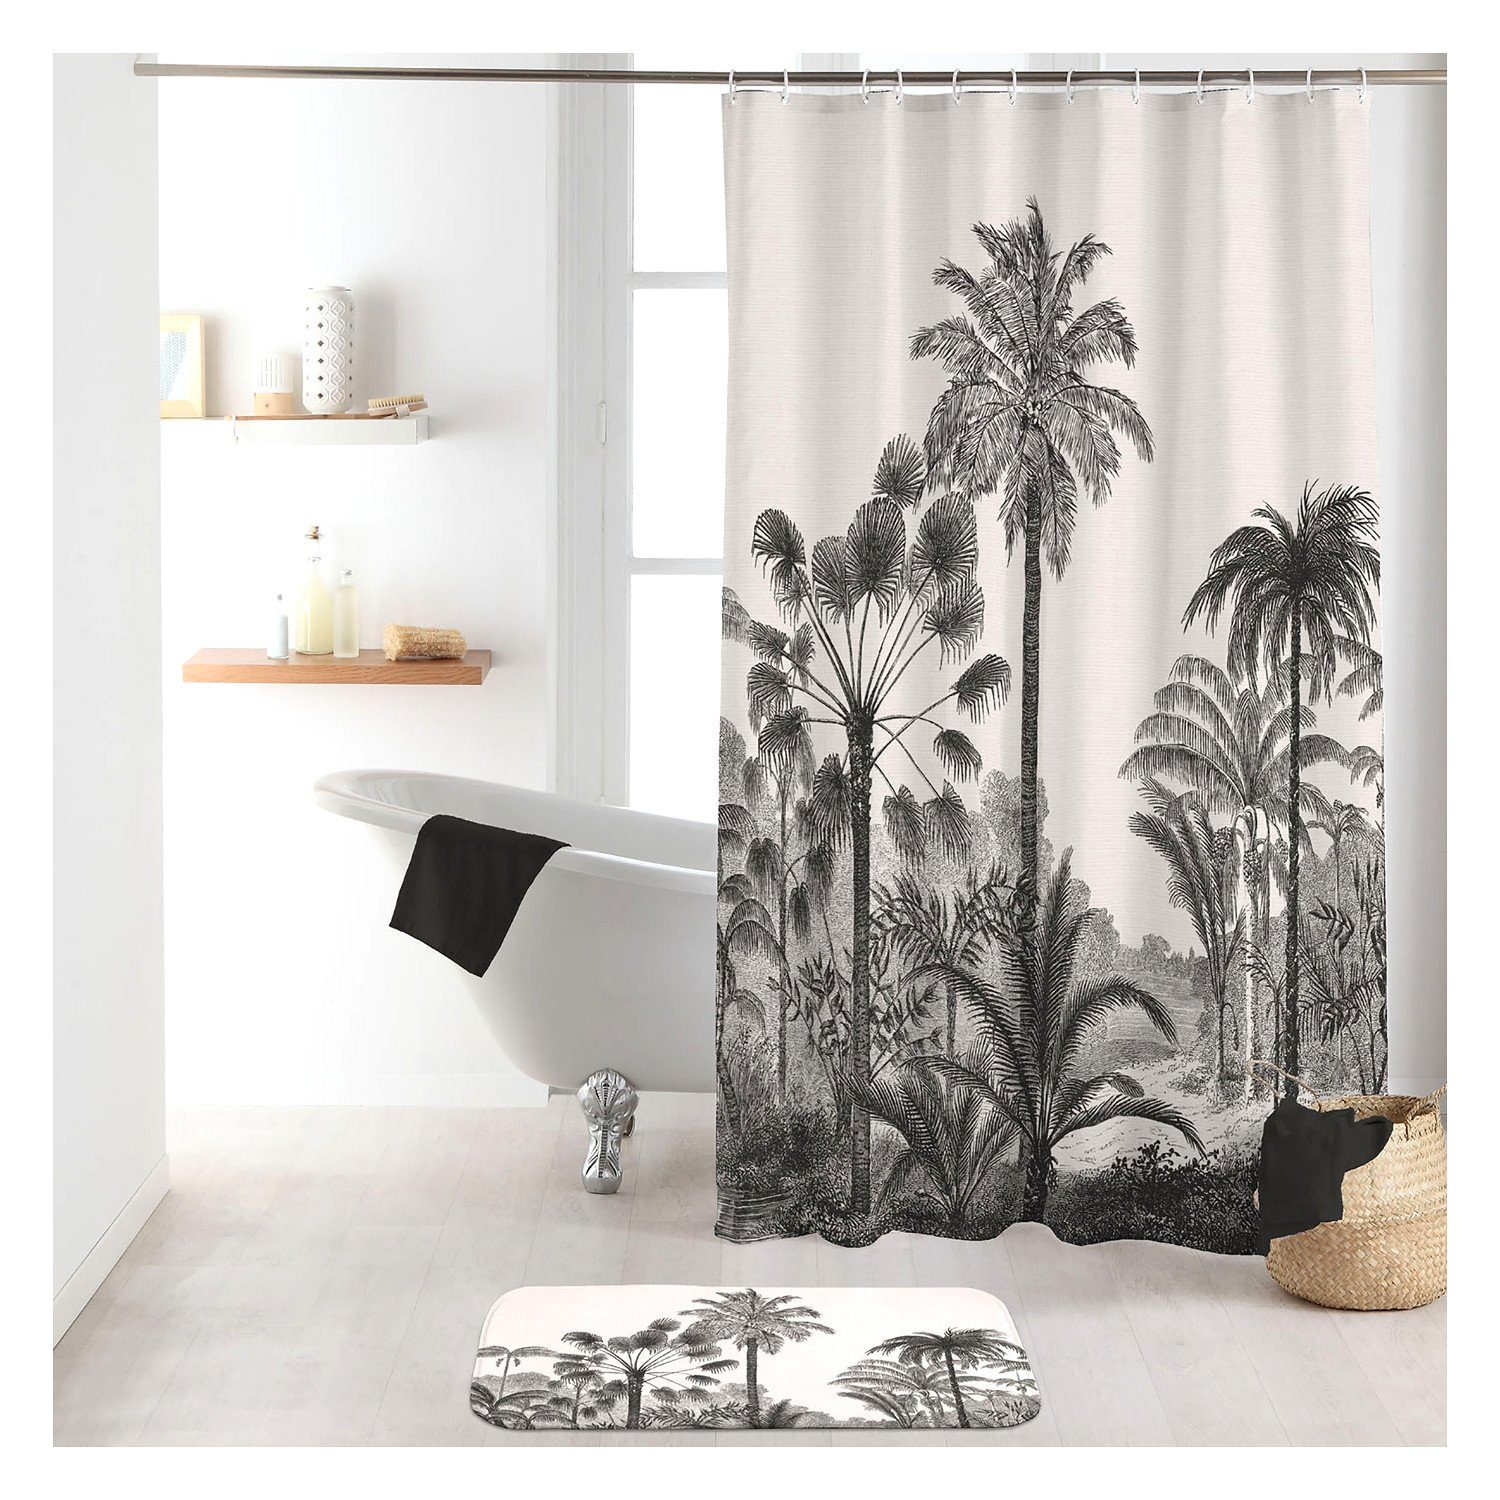 Sanixa Duschvorhang waschbar Badewannenvorhang Vorhang hochwertige Qualität  mit Metallösen Breite 180 cm, Duschvorhang Textil 180x200 cm grau Palmen  Strand wasserabweisend